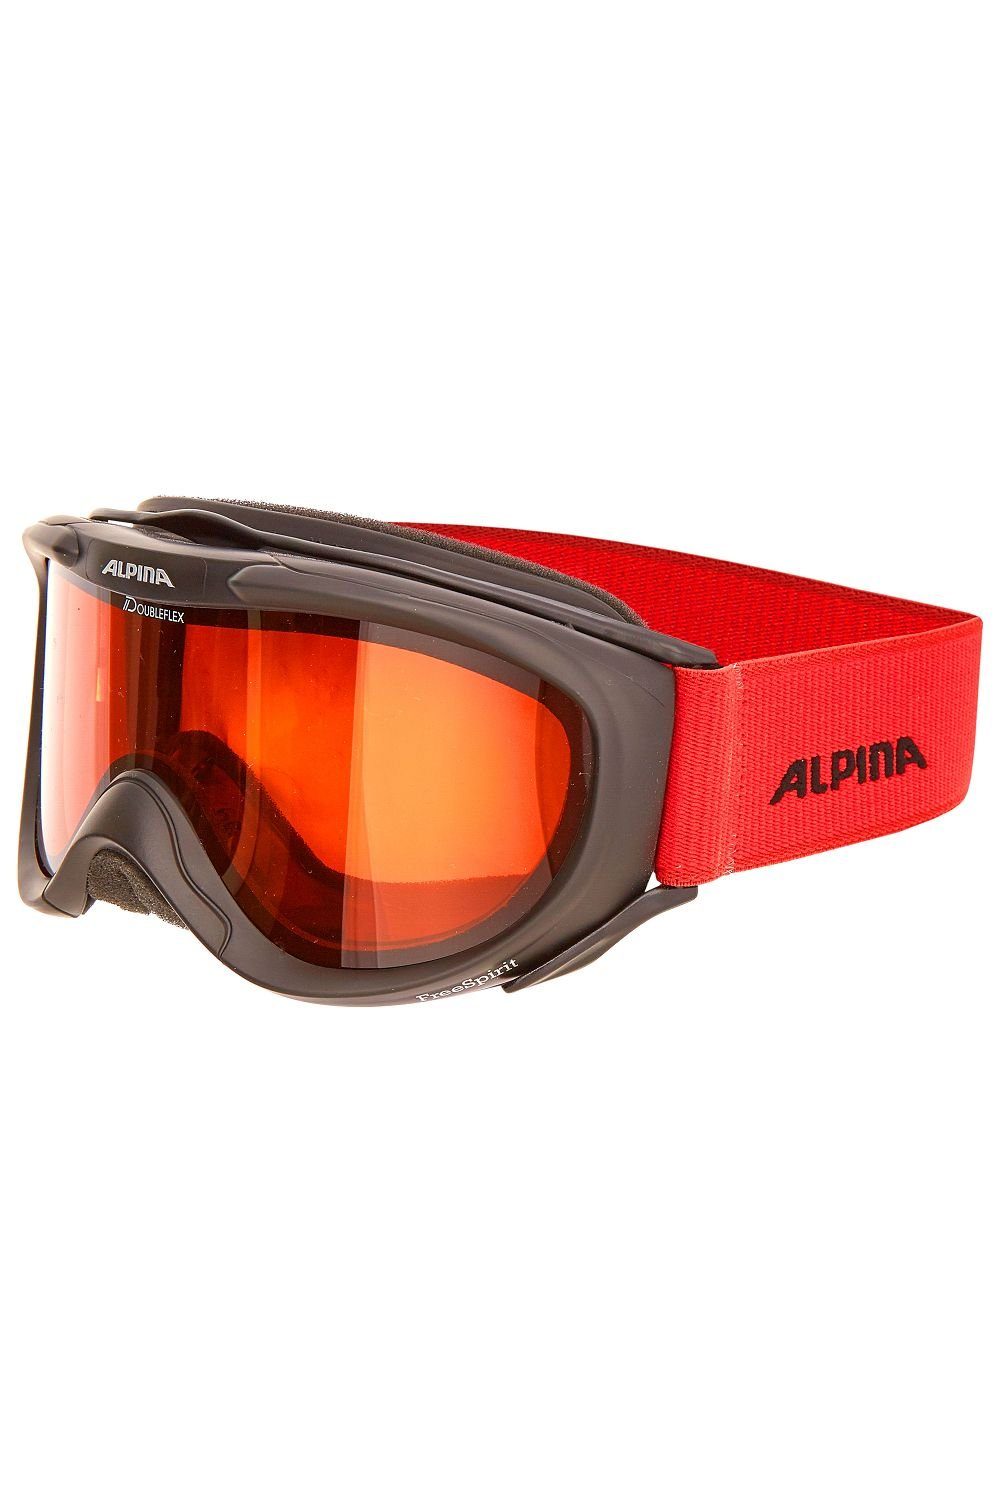 Alpina Skibrille Sports onesize FREESPIRIT schwarz/rot Skibrille DH Alpina